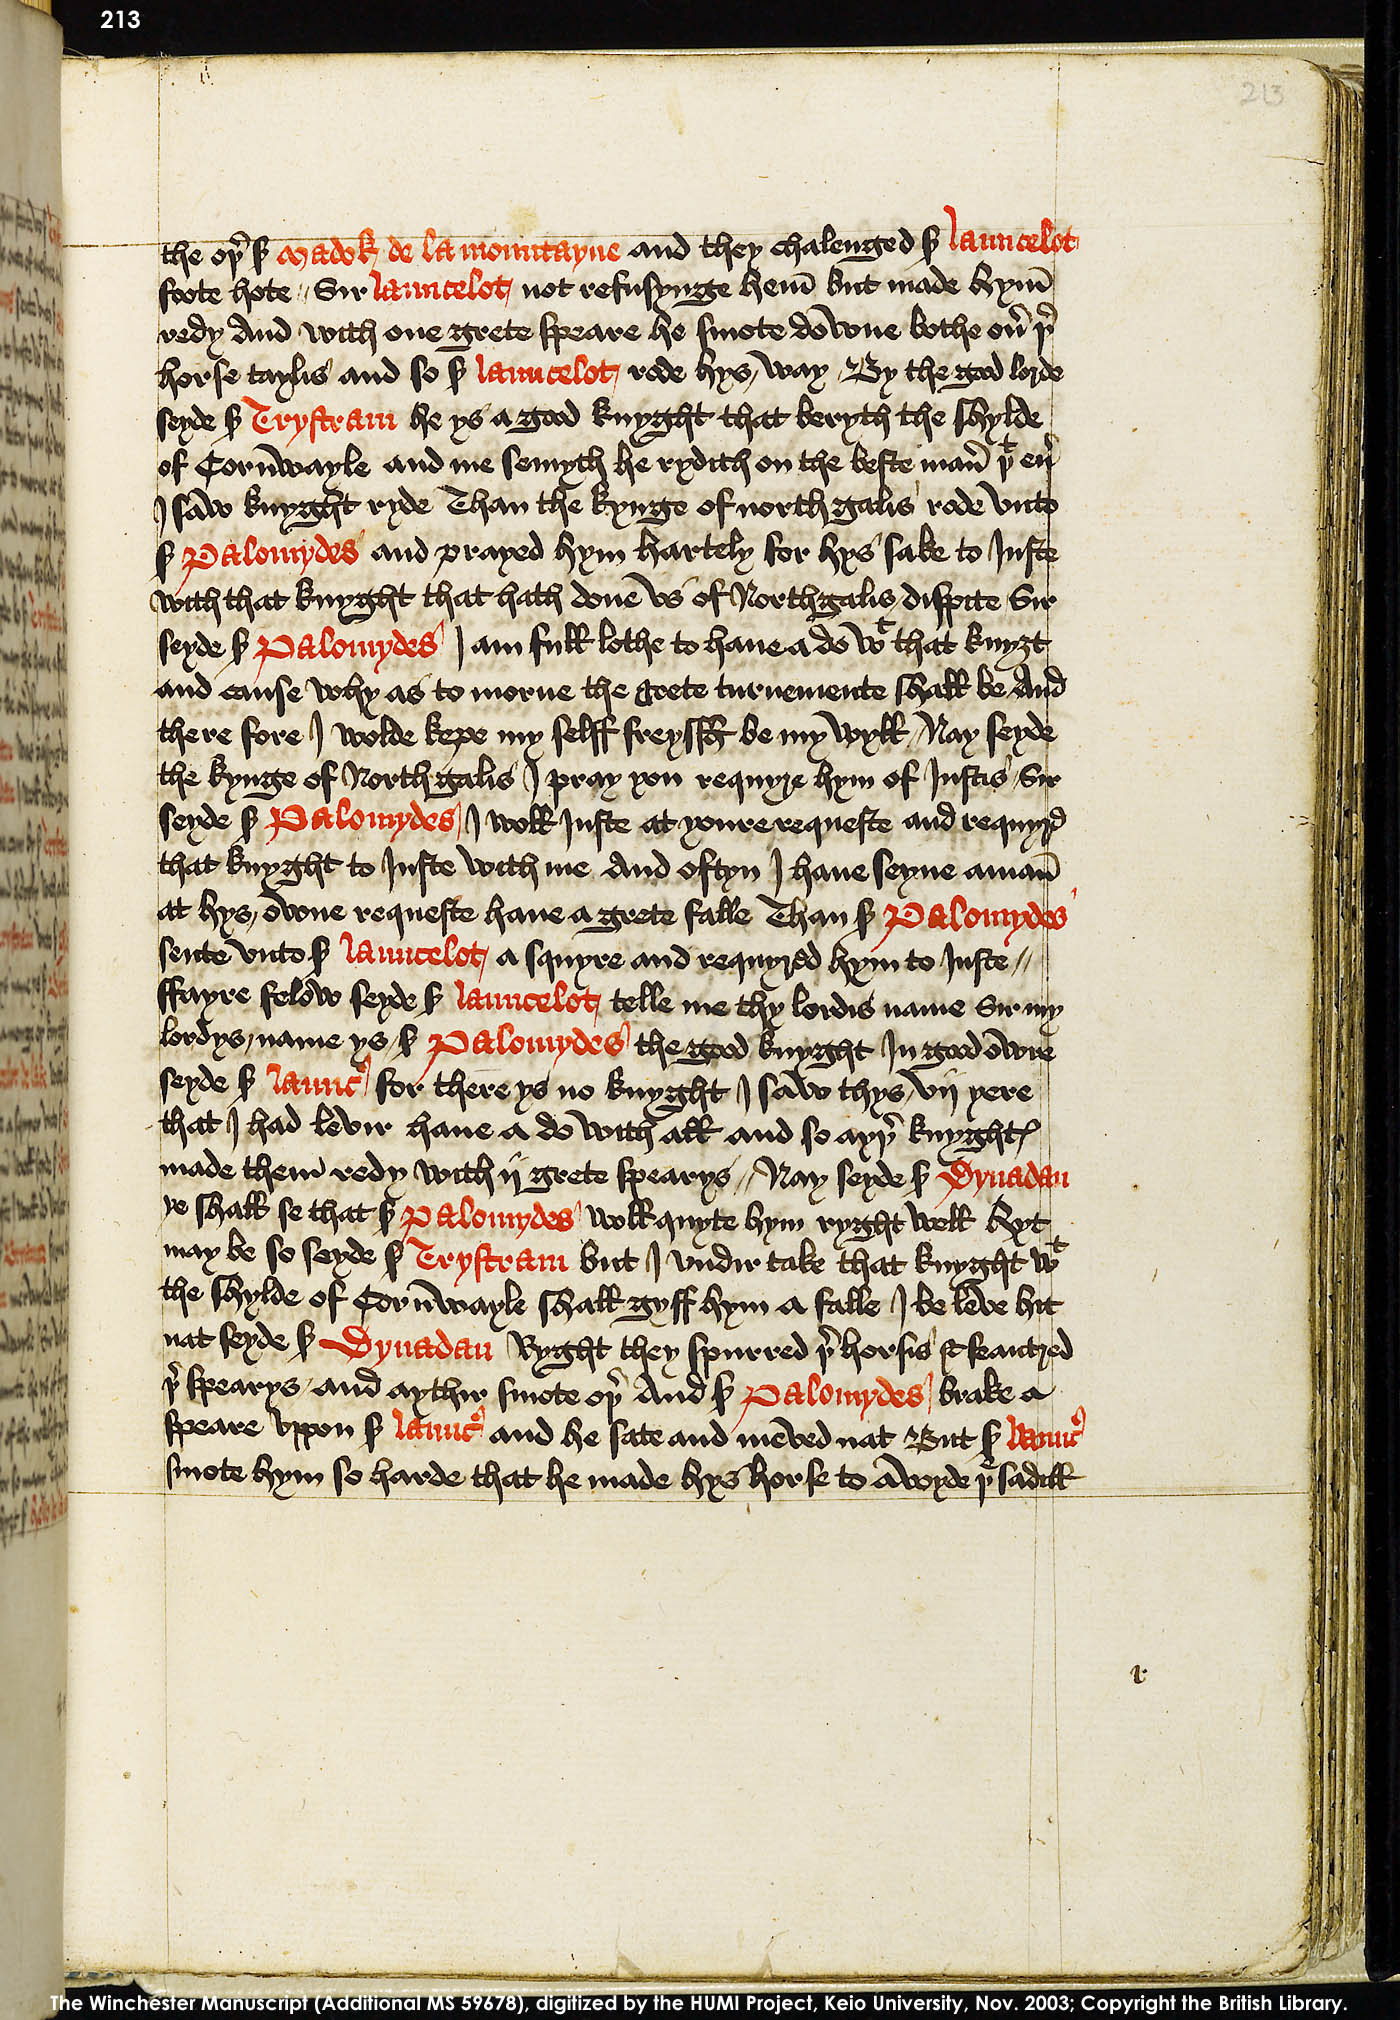 Folio 213r